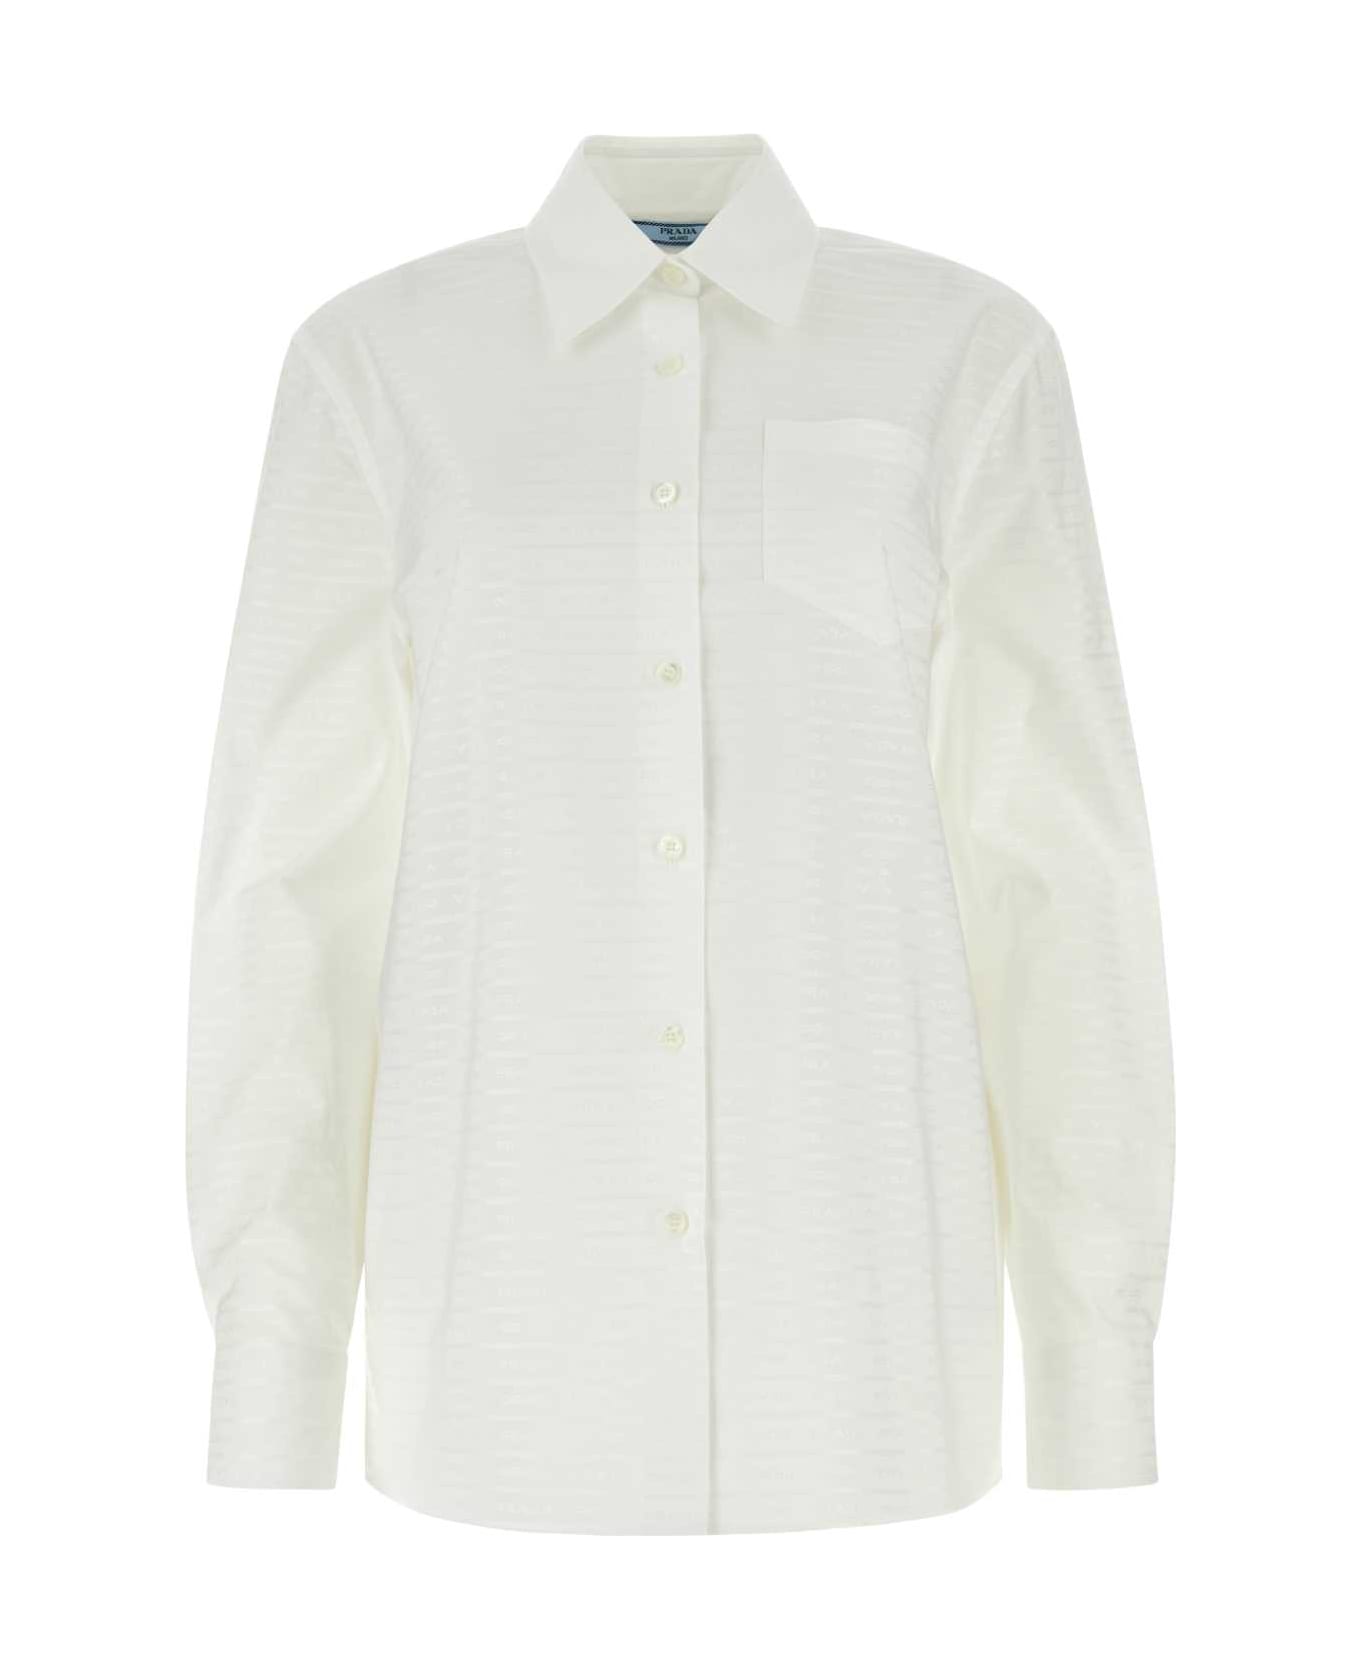 Prada White Cotton Shirt - BIANCO